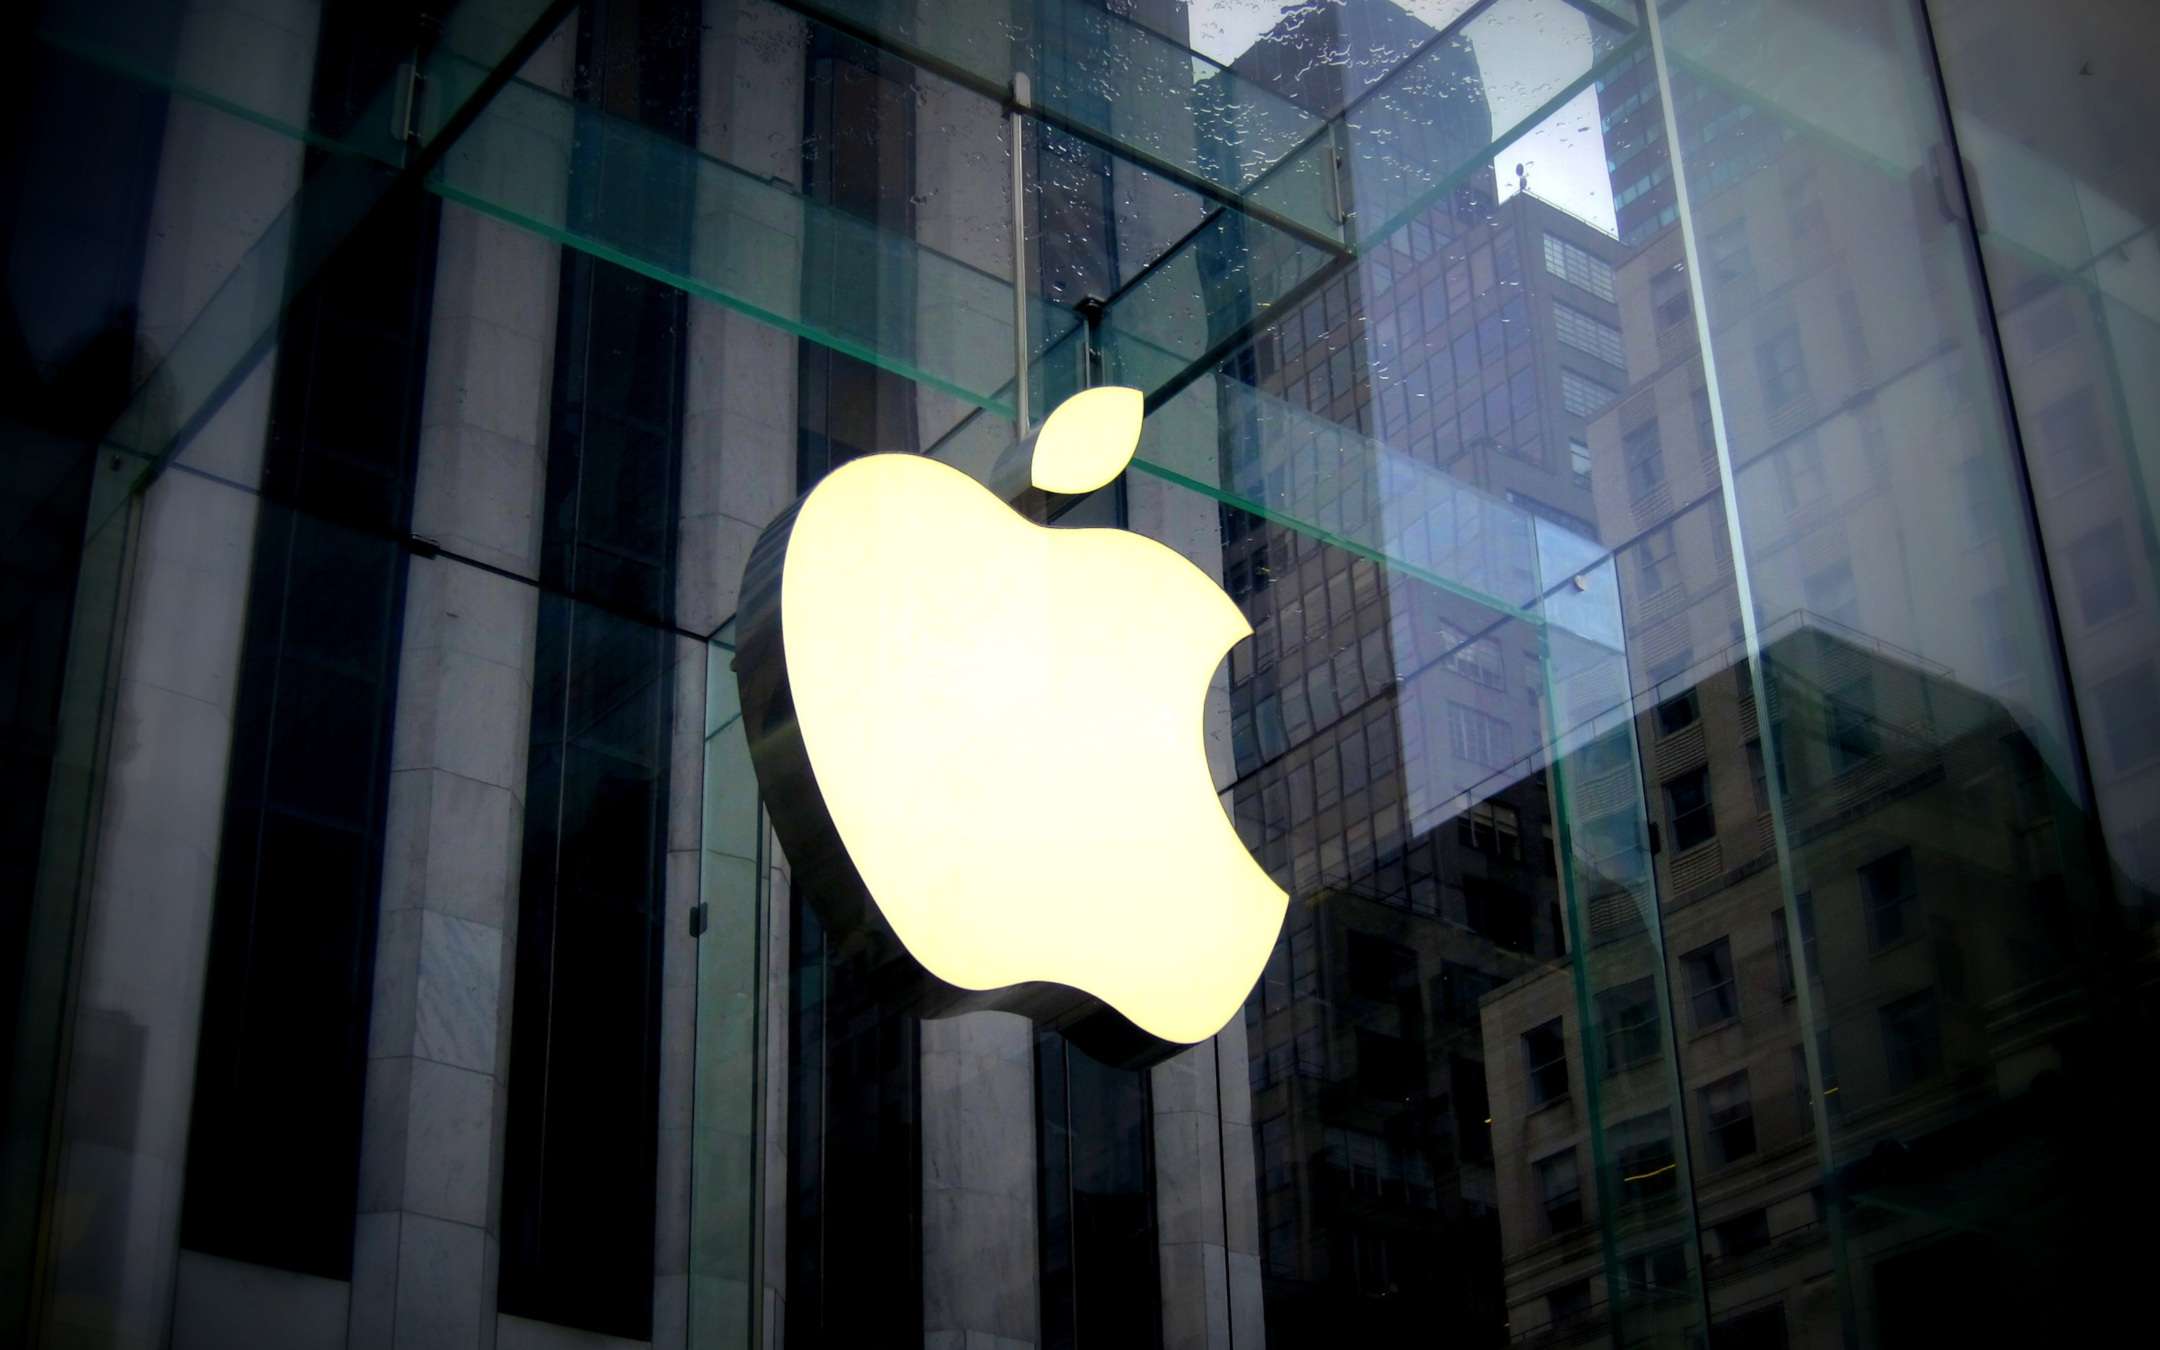 In arrivo i chip Apple per iPhone, iPad e Mac